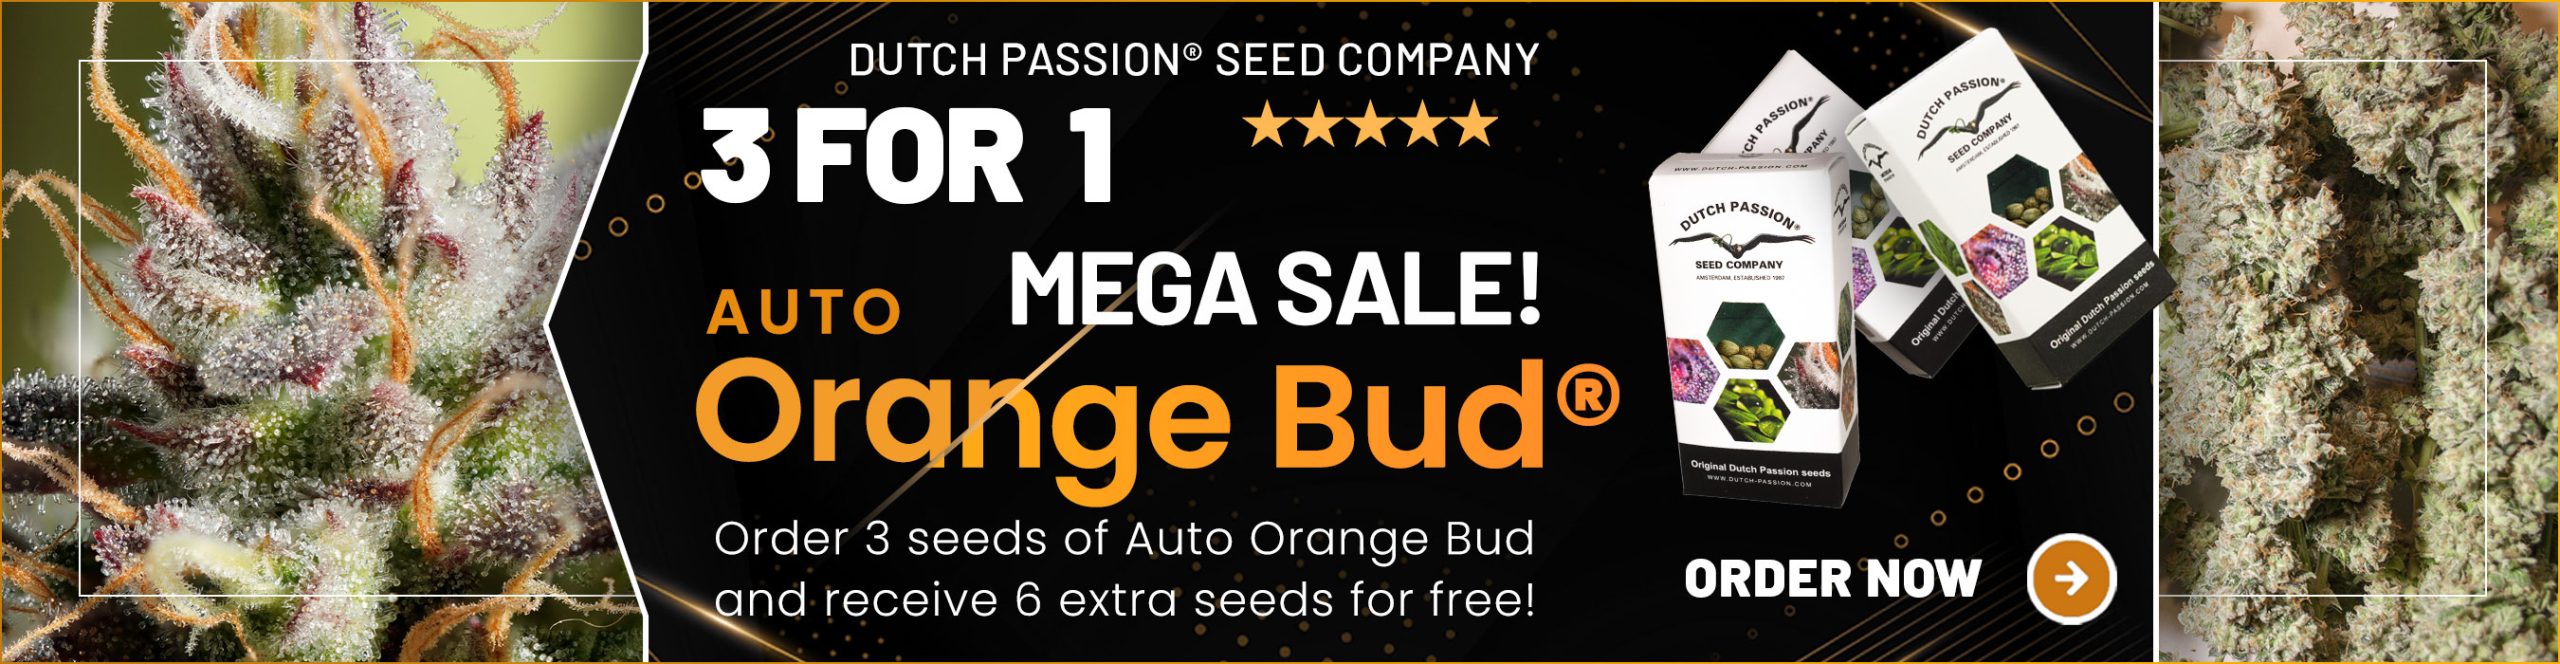 Auto Orange Bud 3 for 1 mega cannabis seed sale